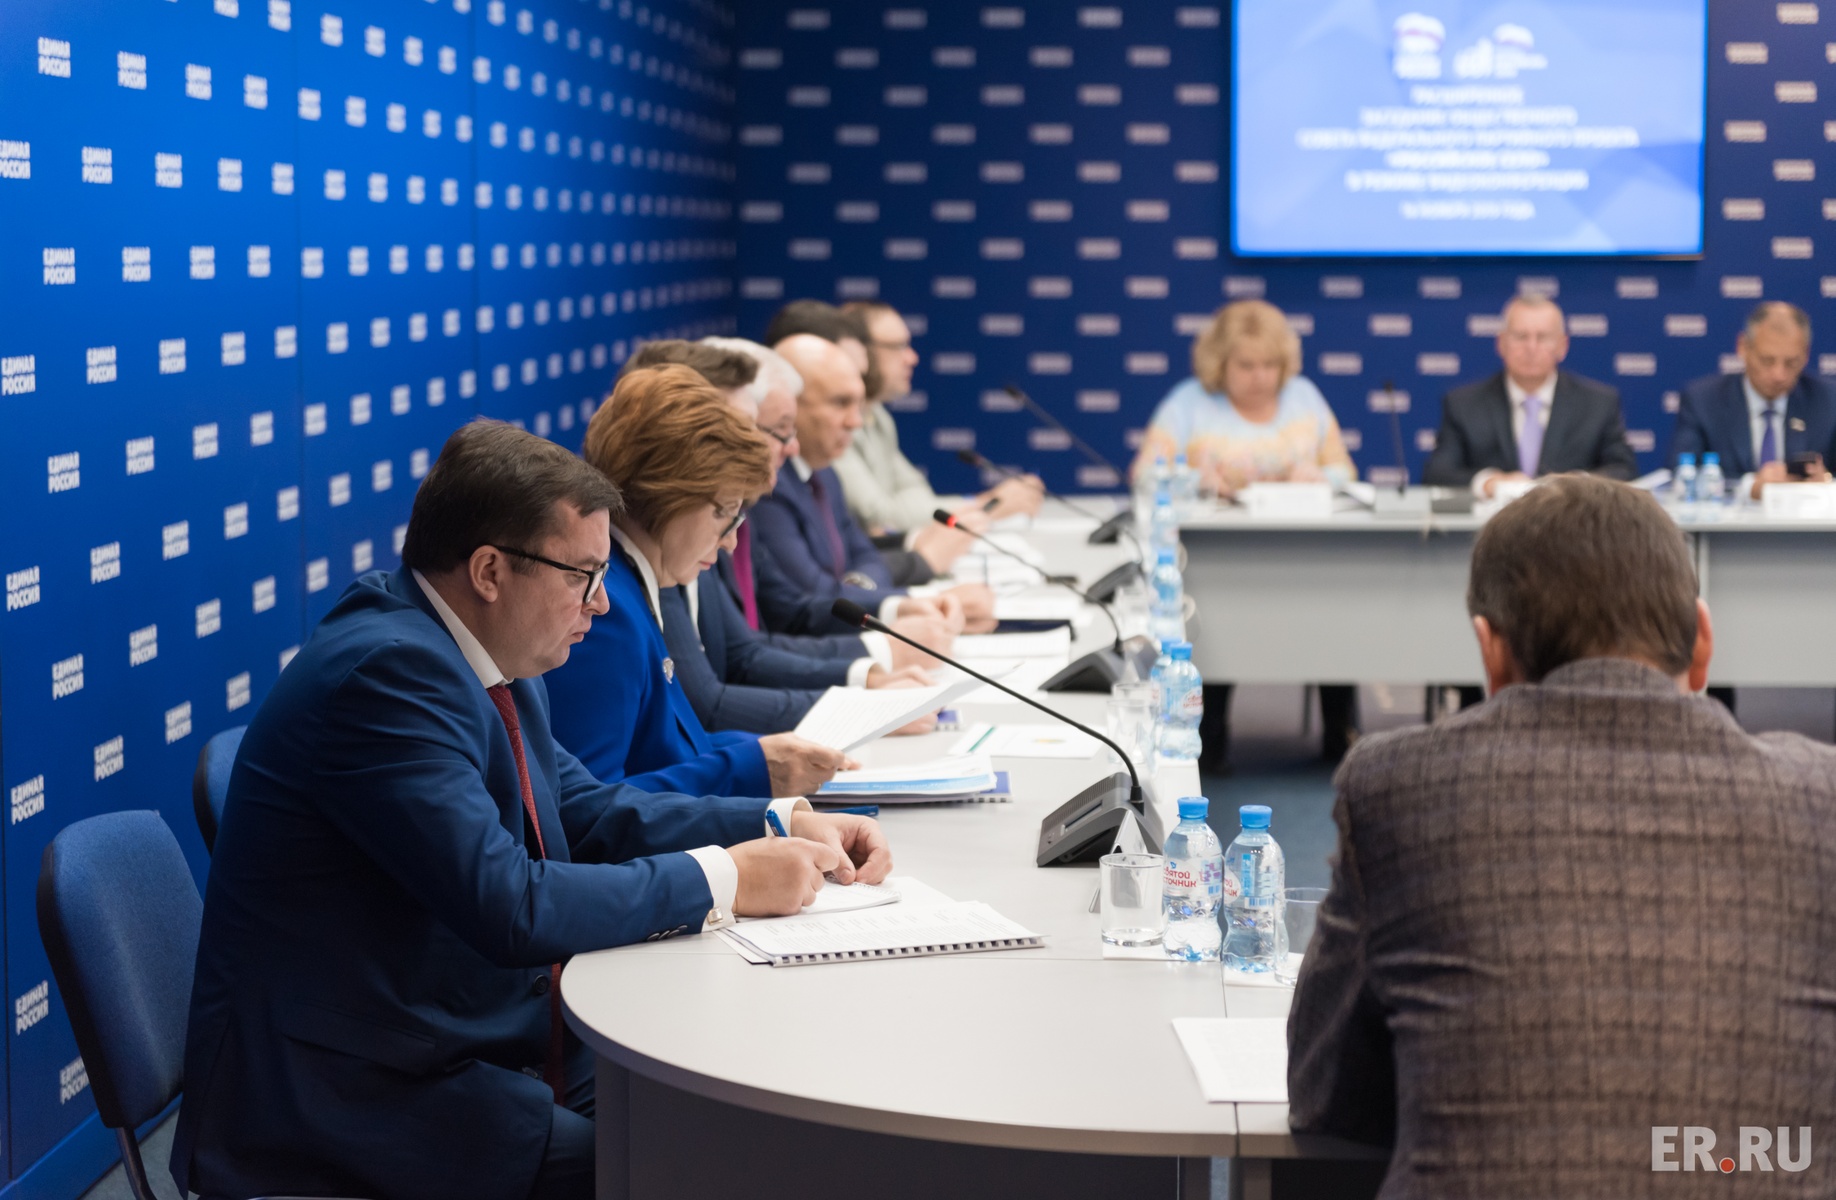  Расширенное заседание в режиме видеоконференции общественного совета федерального партпроекта «Российское село»